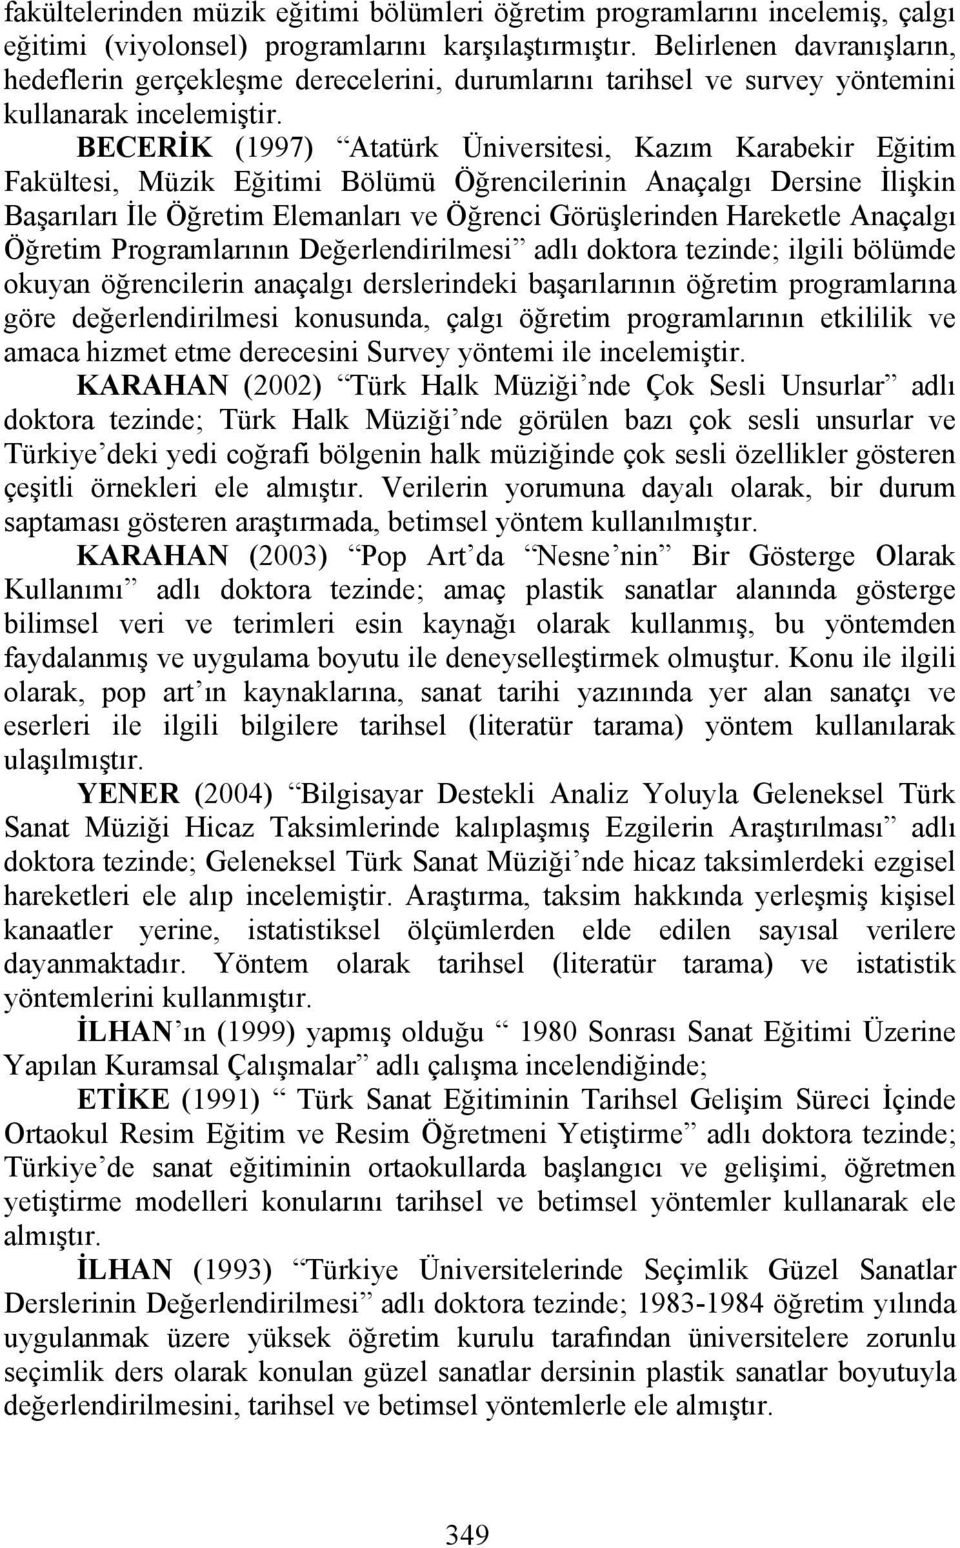 BECERİK (1997) Atatürk Üniversitesi, Kazım Karabekir Eğitim Fakültesi, Müzik Eğitimi Bölümü Öğrencilerinin Anaçalgı Dersine İlişkin Başarıları İle Öğretim Elemanları ve Öğrenci Görüşlerinden